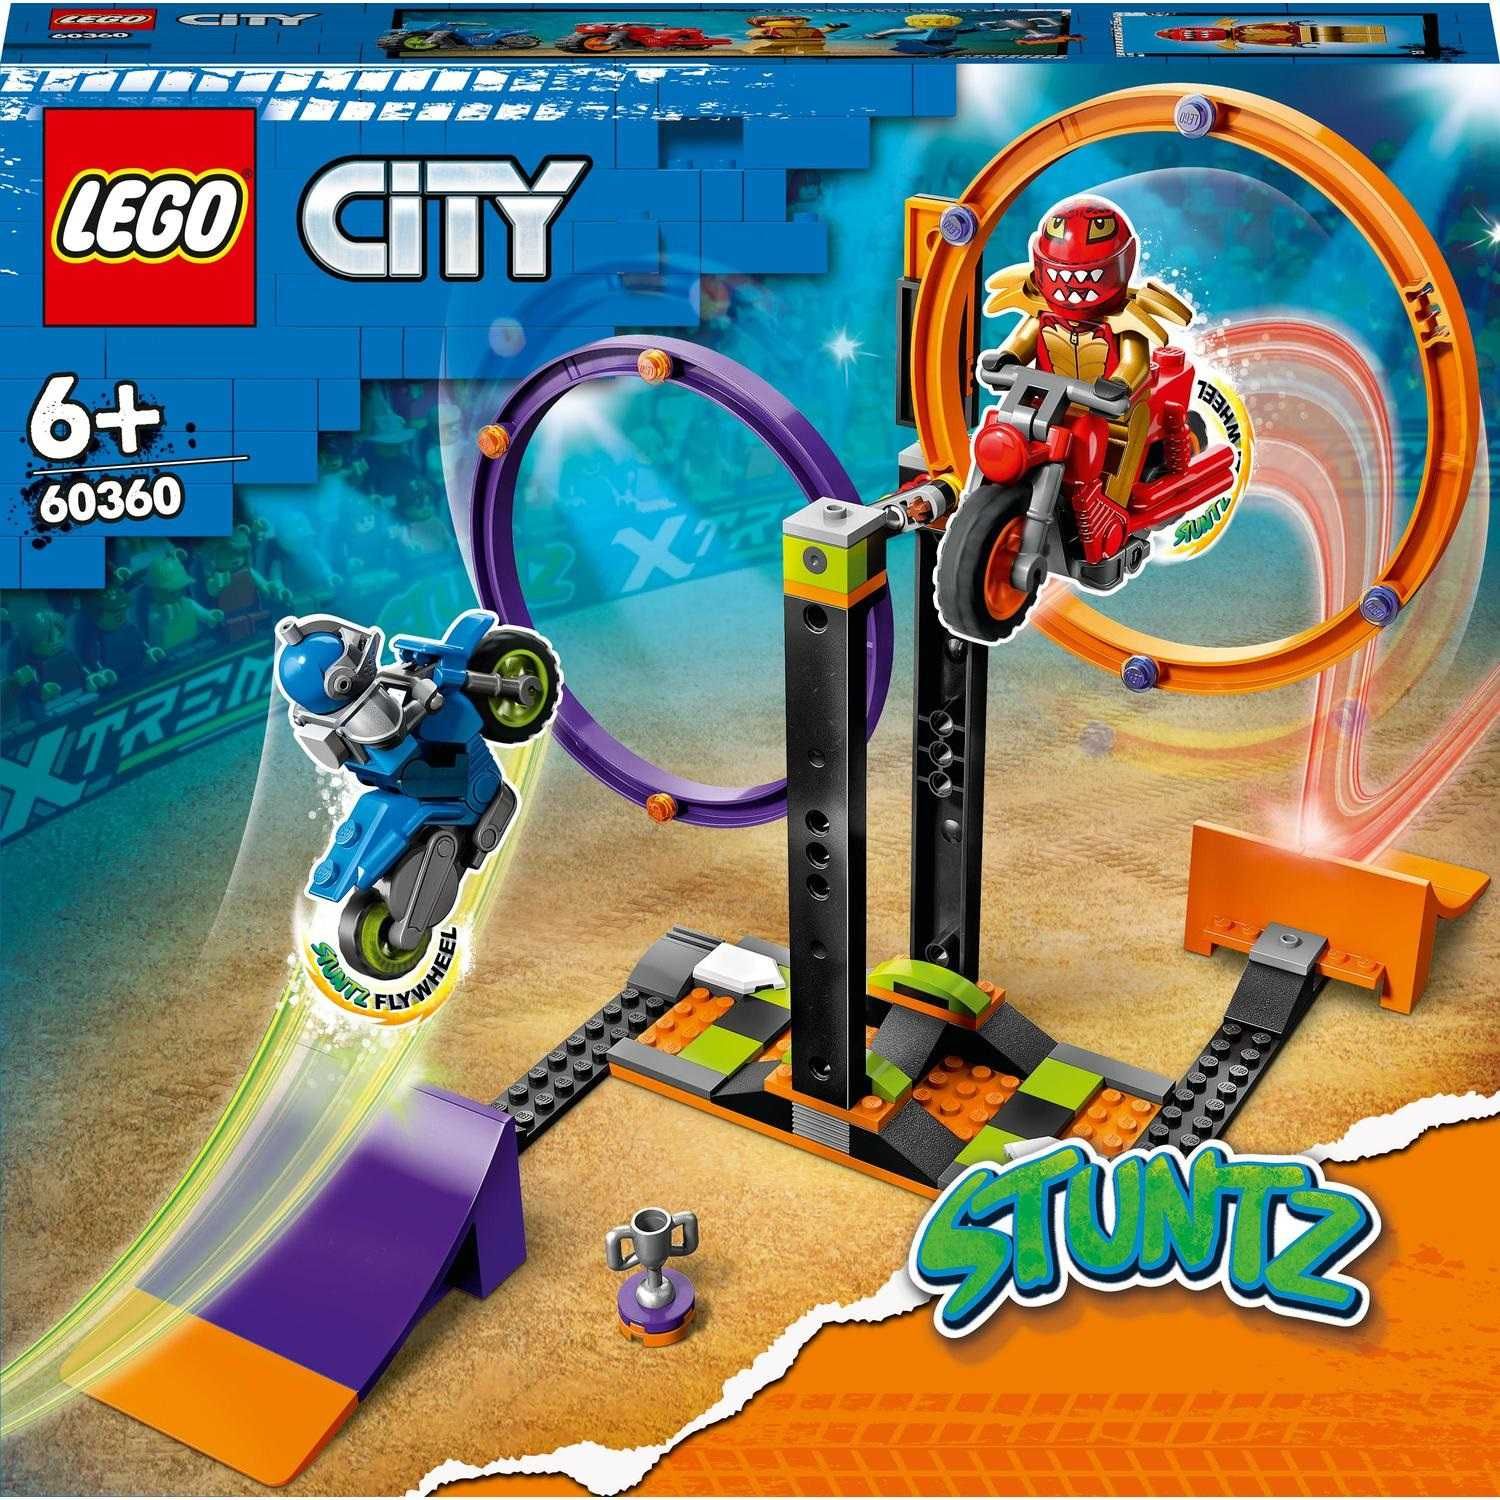 LEGO City 60360 Wyzwanie kaskaderskie obracające się okręgi